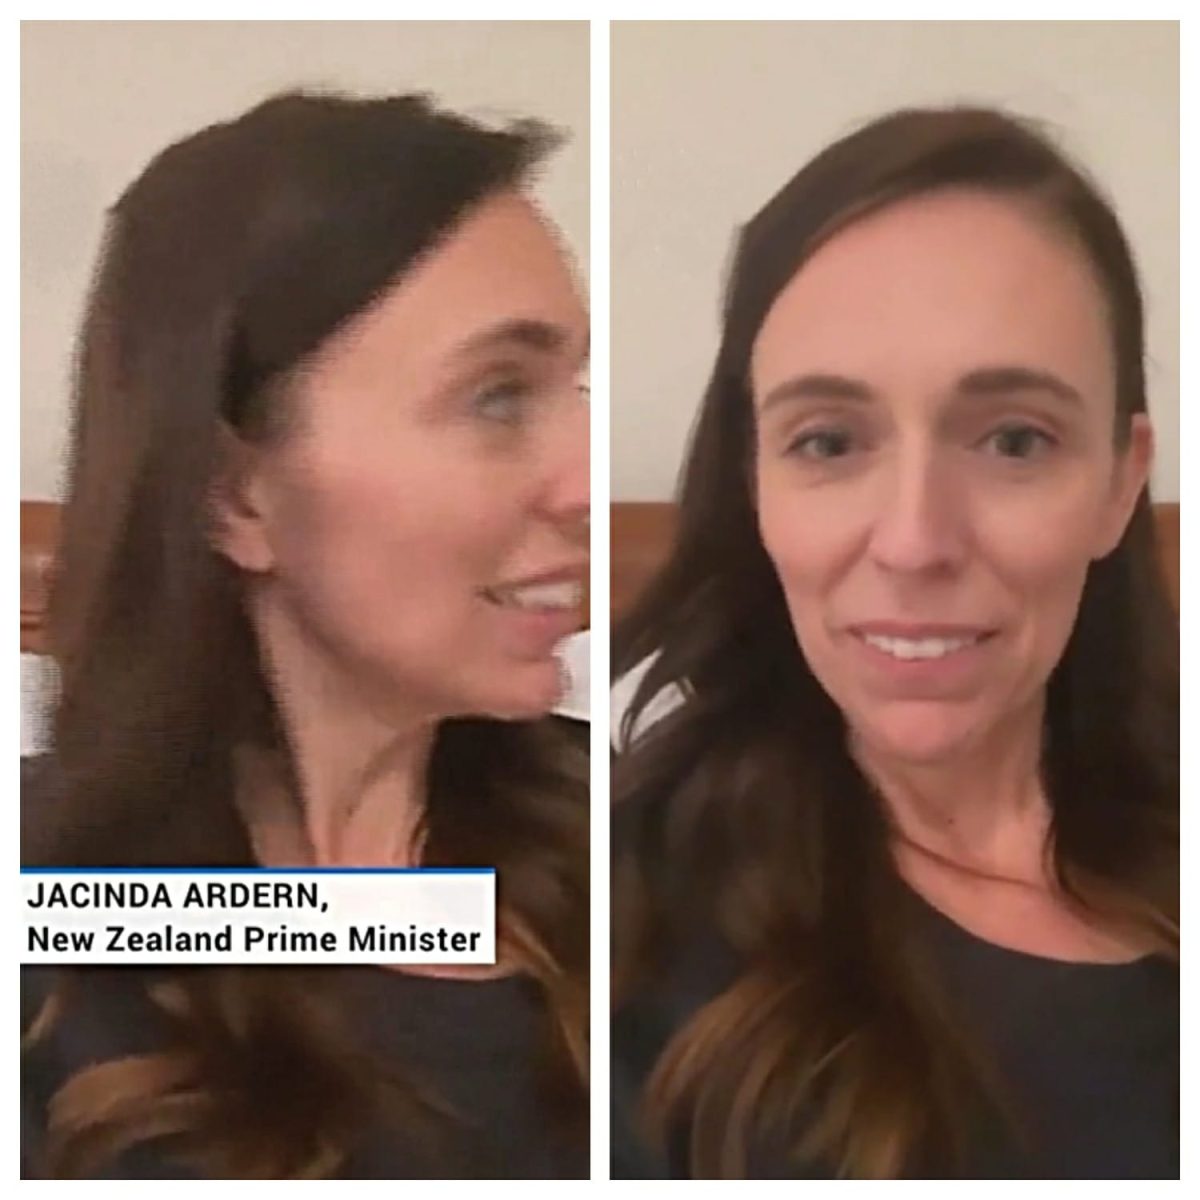 Video : New Zealand की प्रधानमंत्री कर रही थीं लाइव, अचानक बीच में आ गई 3 साल की बेटी